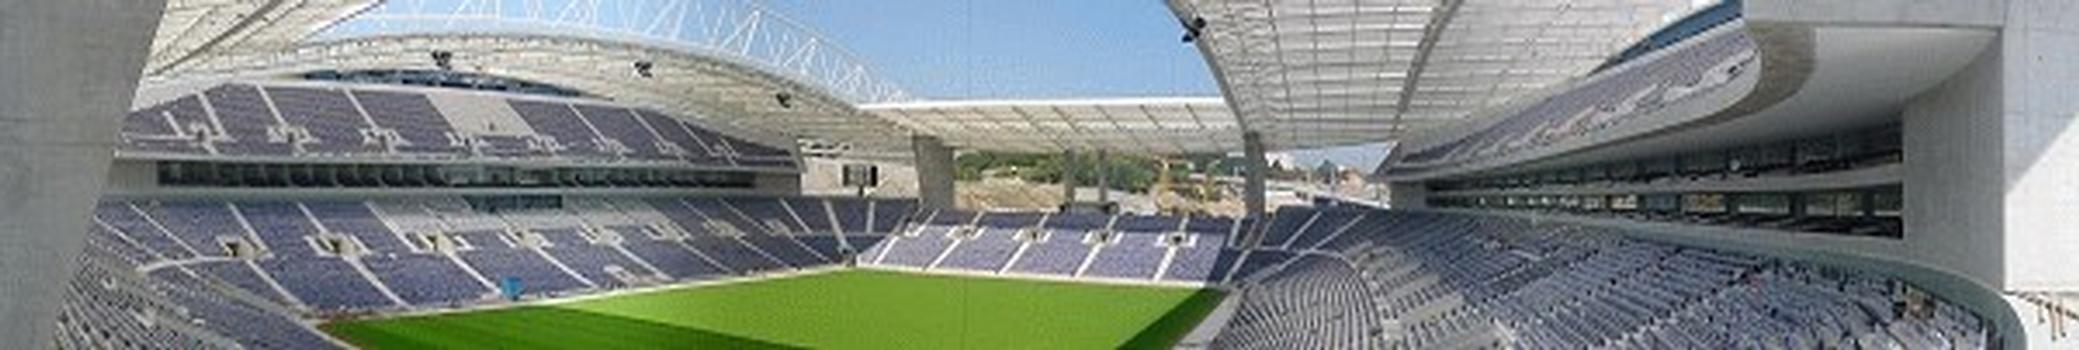 Dragon Stadium, Oporto. Internal Panorama (Simulation)